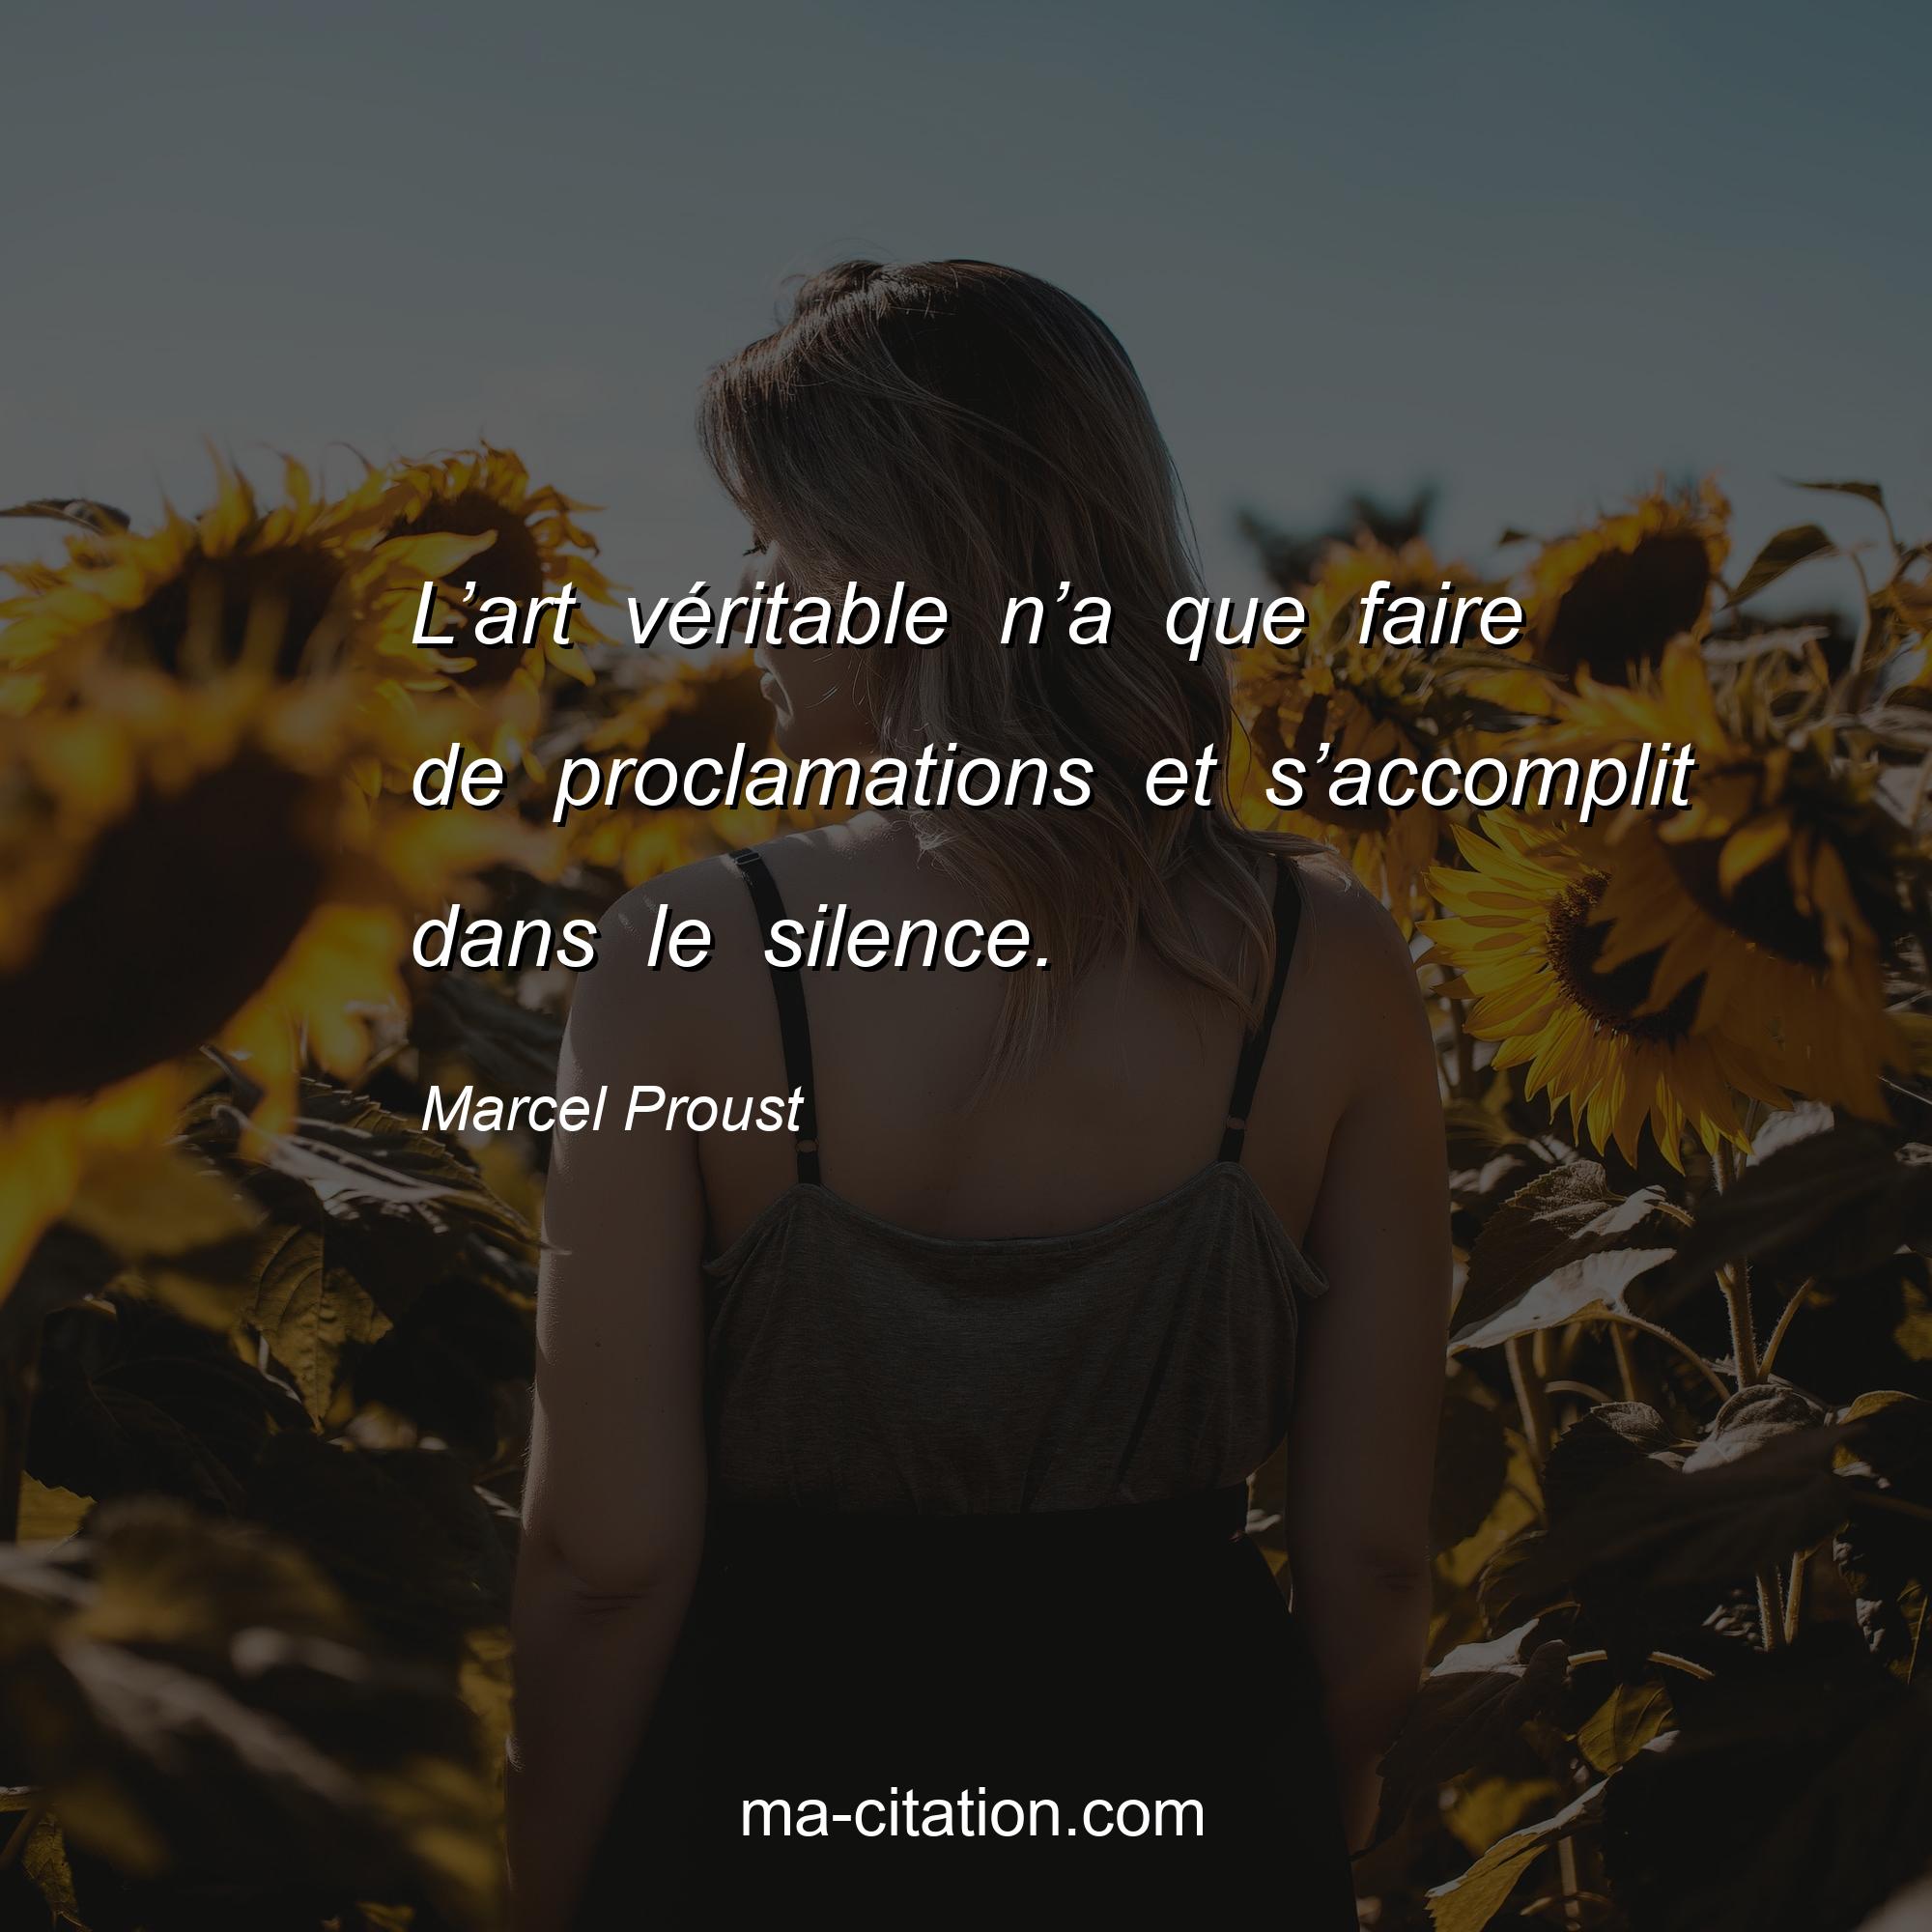 Marcel Proust : L’art véritable n’a que faire de proclamations et s’accomplit dans le silence.